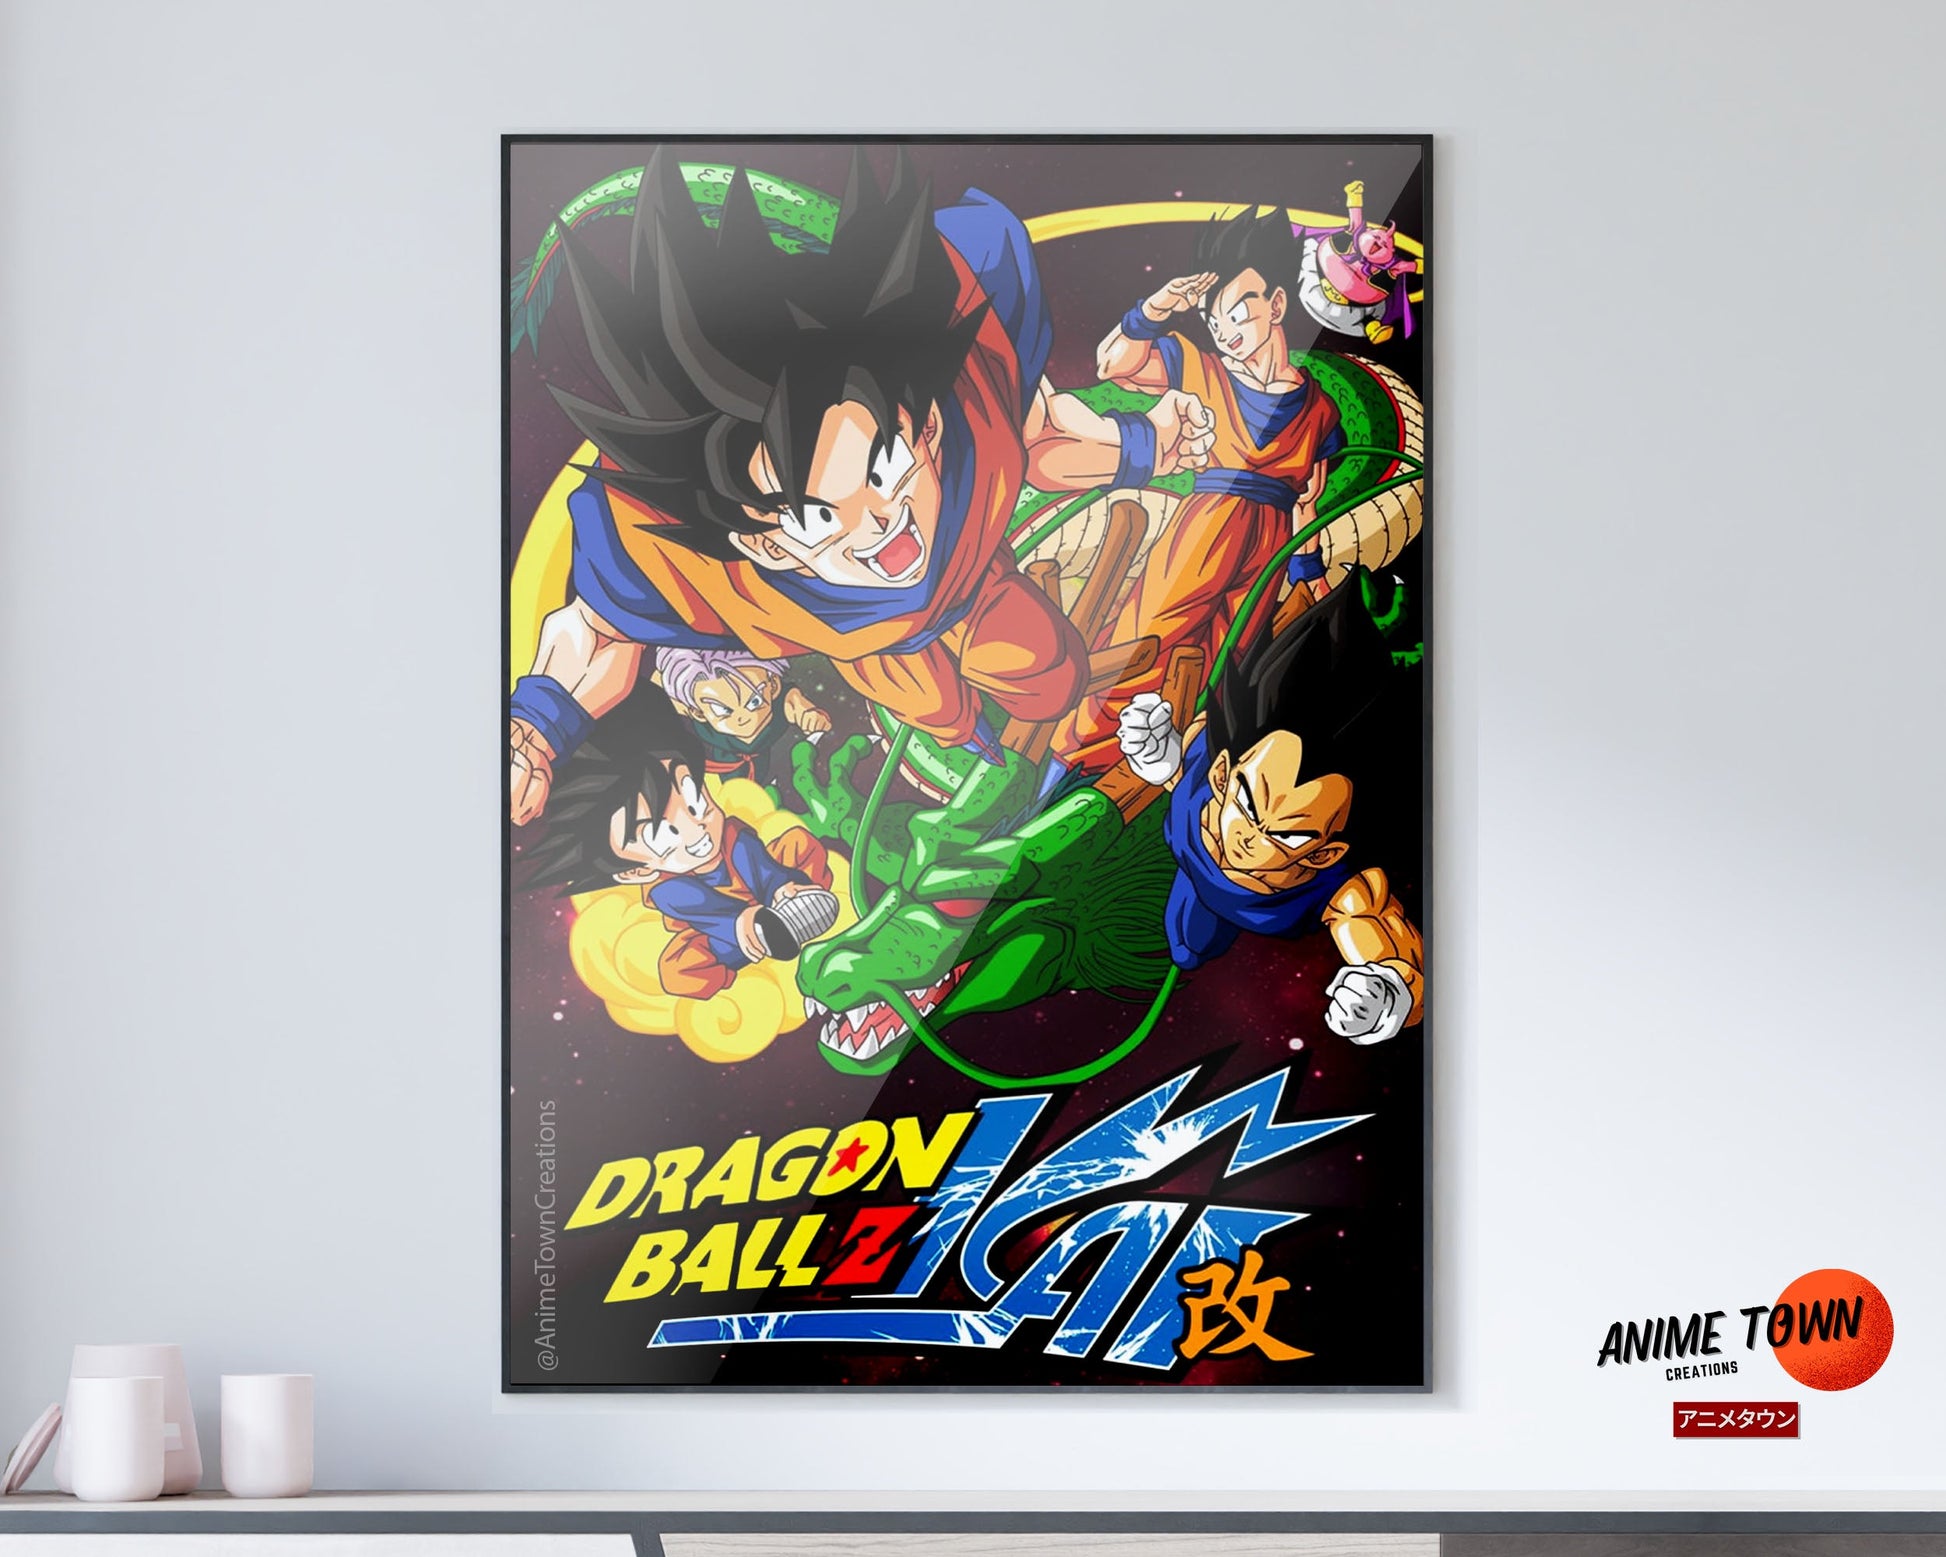 Anime Town Creations Poster Dragon Ball Z Kai 5" x 7" Home Goods - Anime Dragon Ball Poster